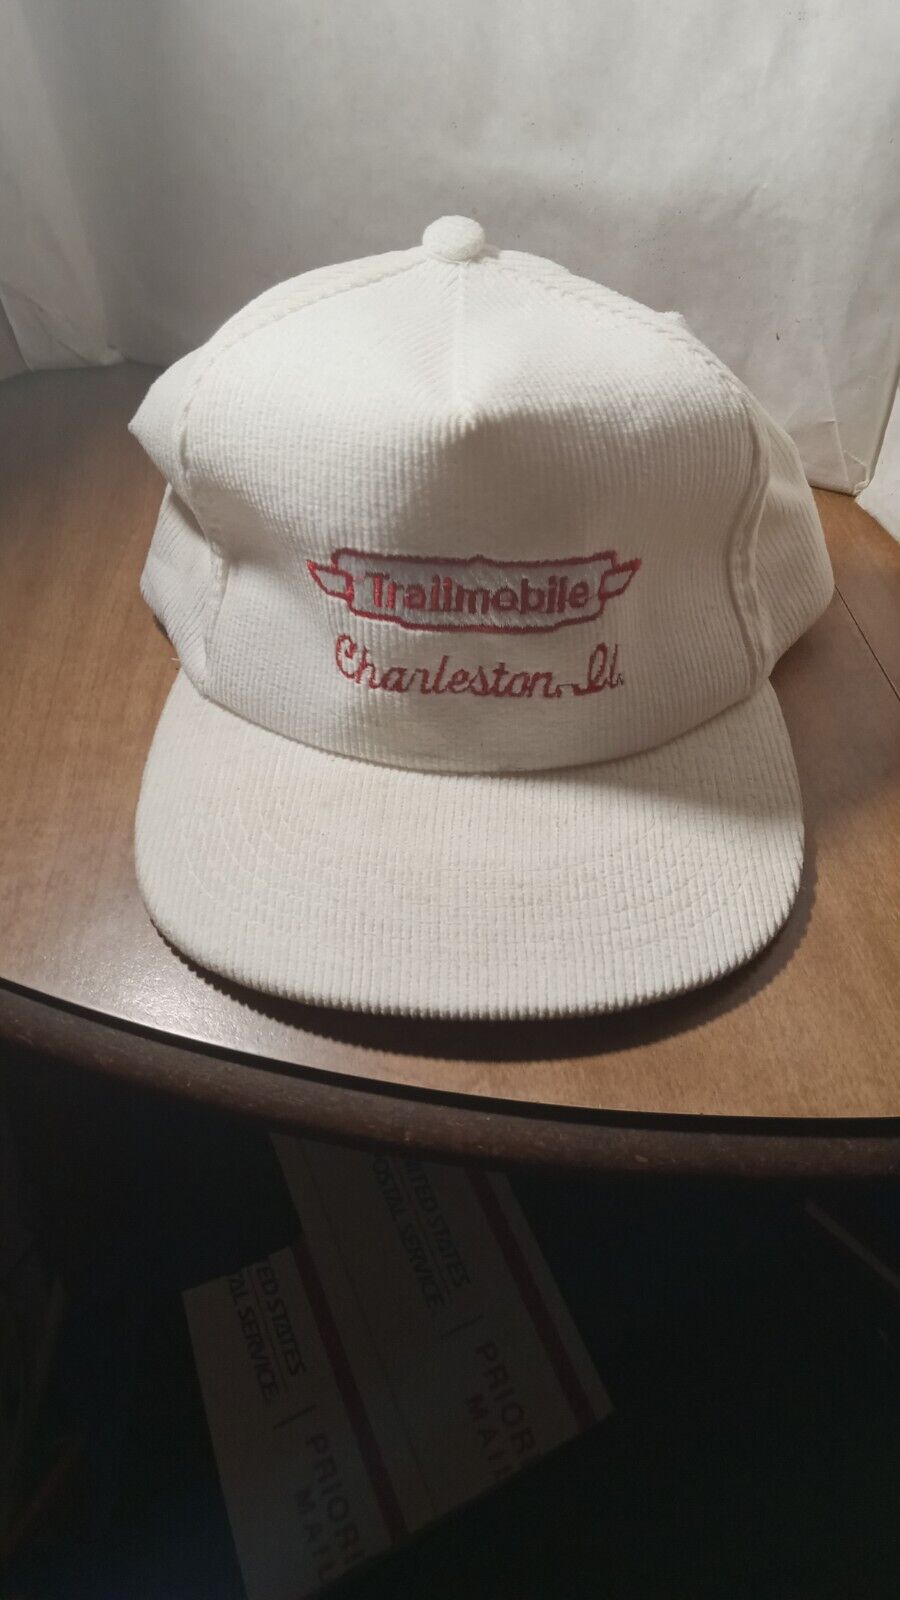 Vintage Trailmobile Corduroy Charleston Illinois Ill Adjustable Hat Cap